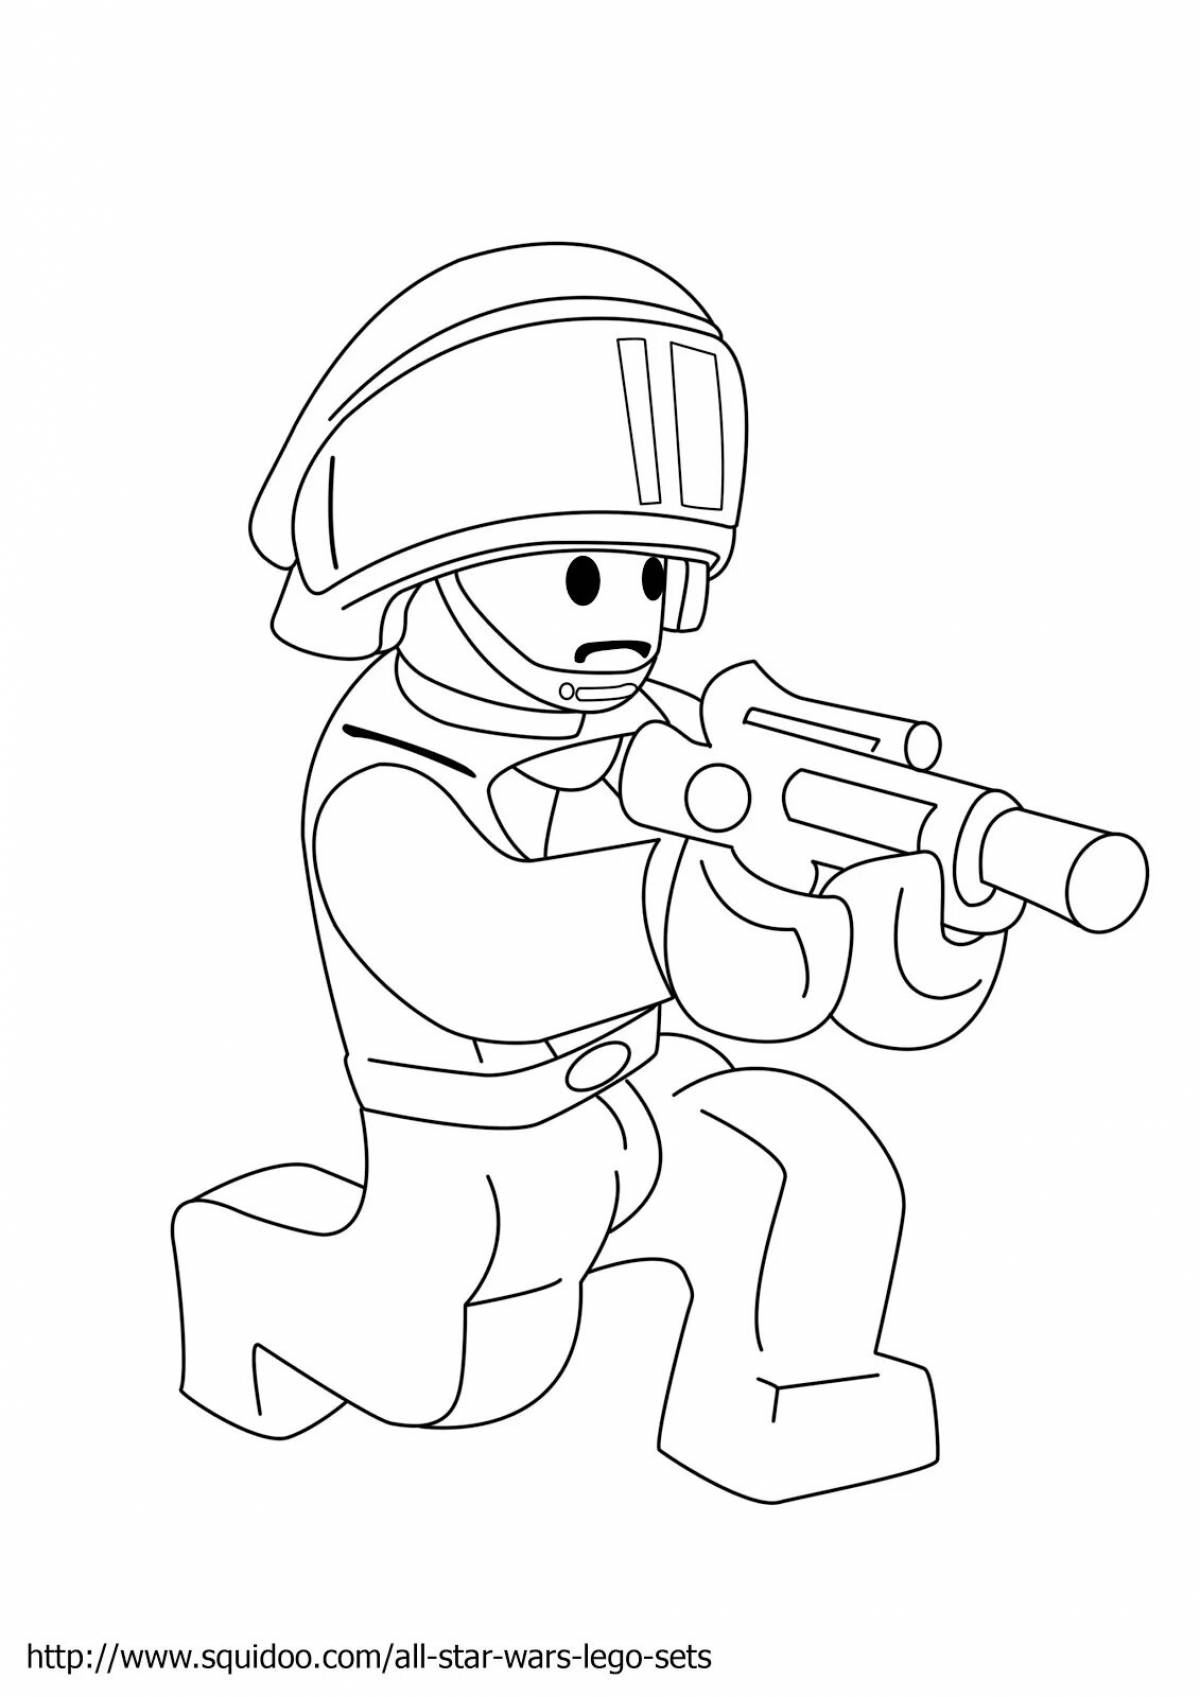 Детально проработанная страница раскраски военных солдат лего